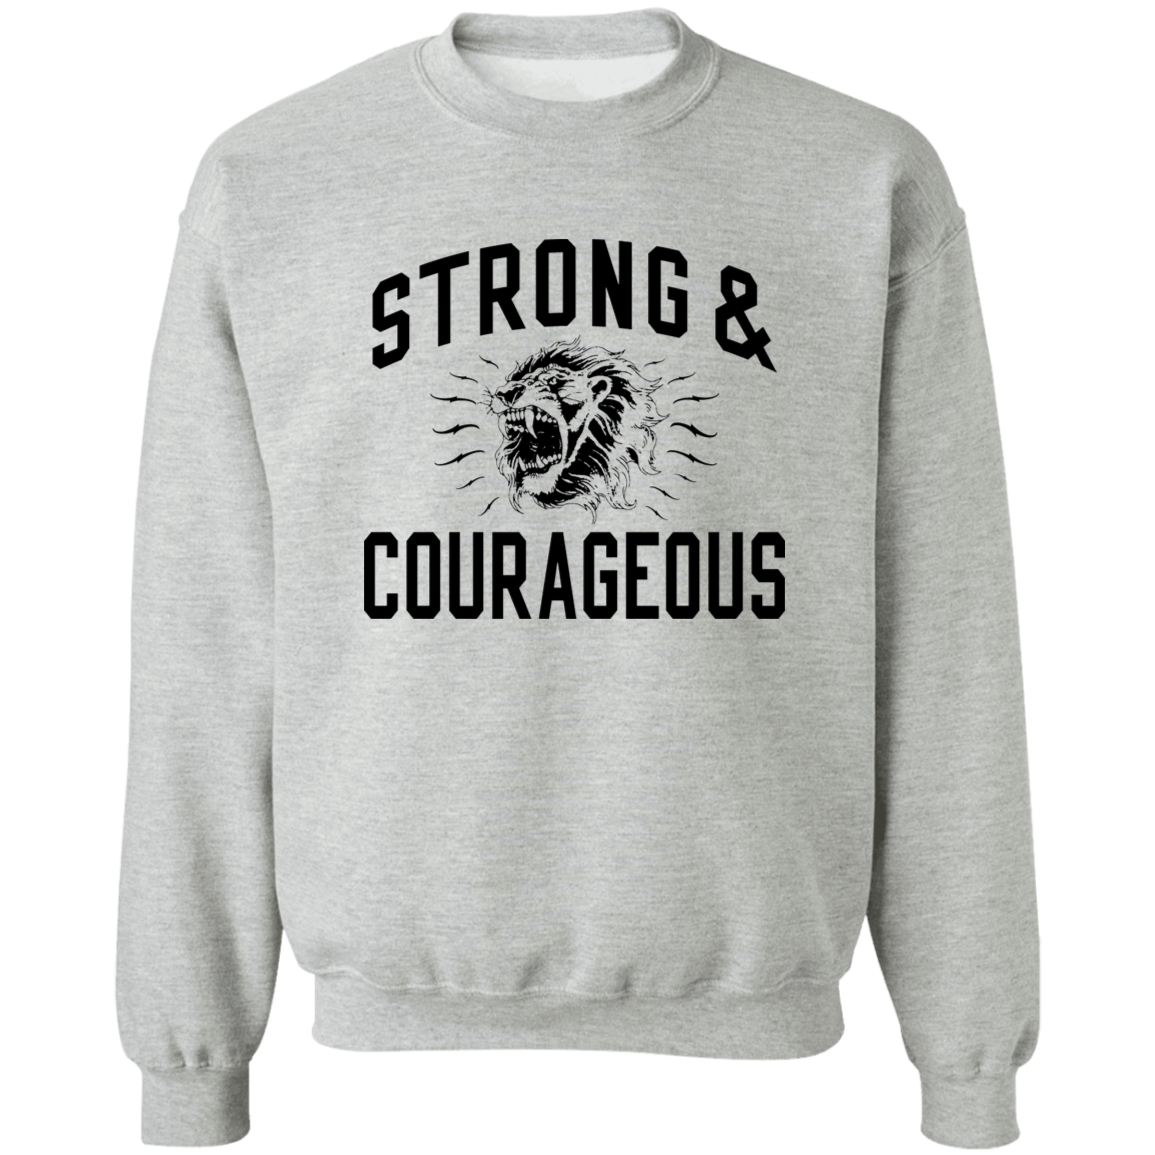 Strong & Courageous Crewneck Sweatshirt